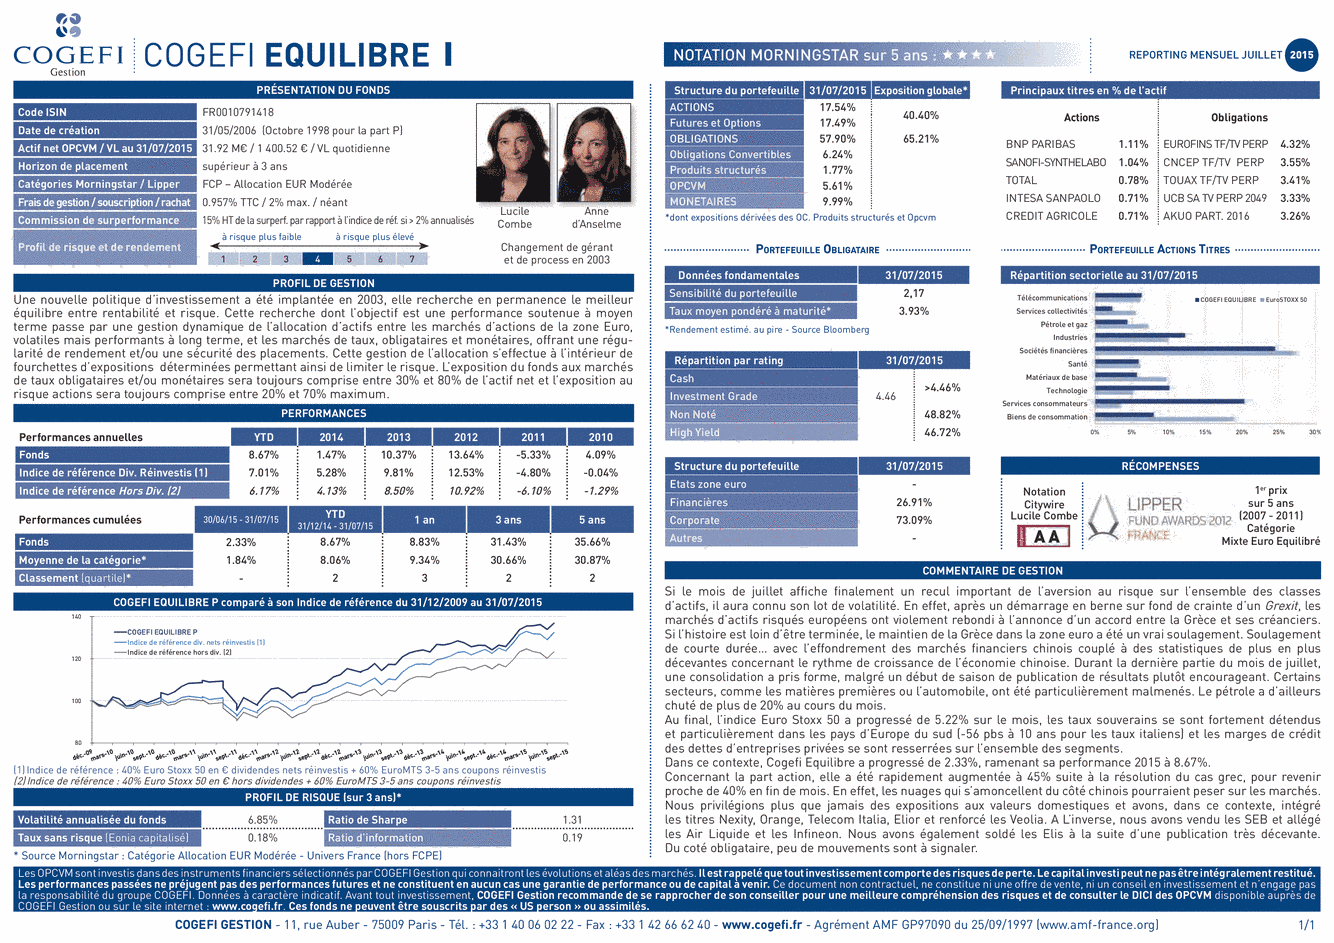 Fiche Produit Cogefi Equilibre I - 31/07/2015 - Français